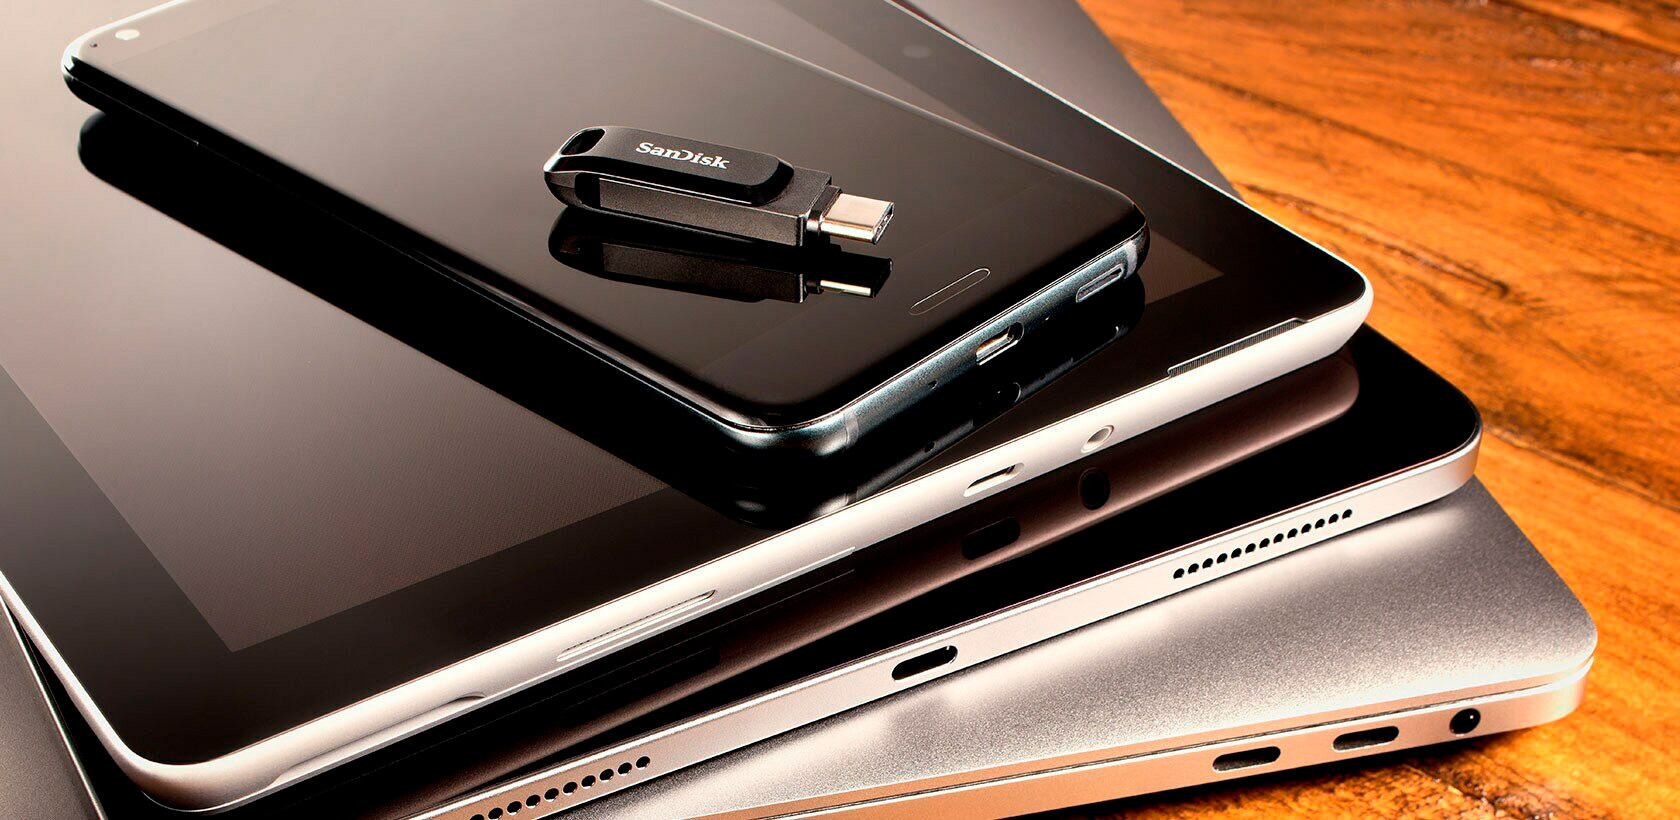 Pen Drive Sandisk Dual Drive Tipo C 64GB USB 3.1 Preto